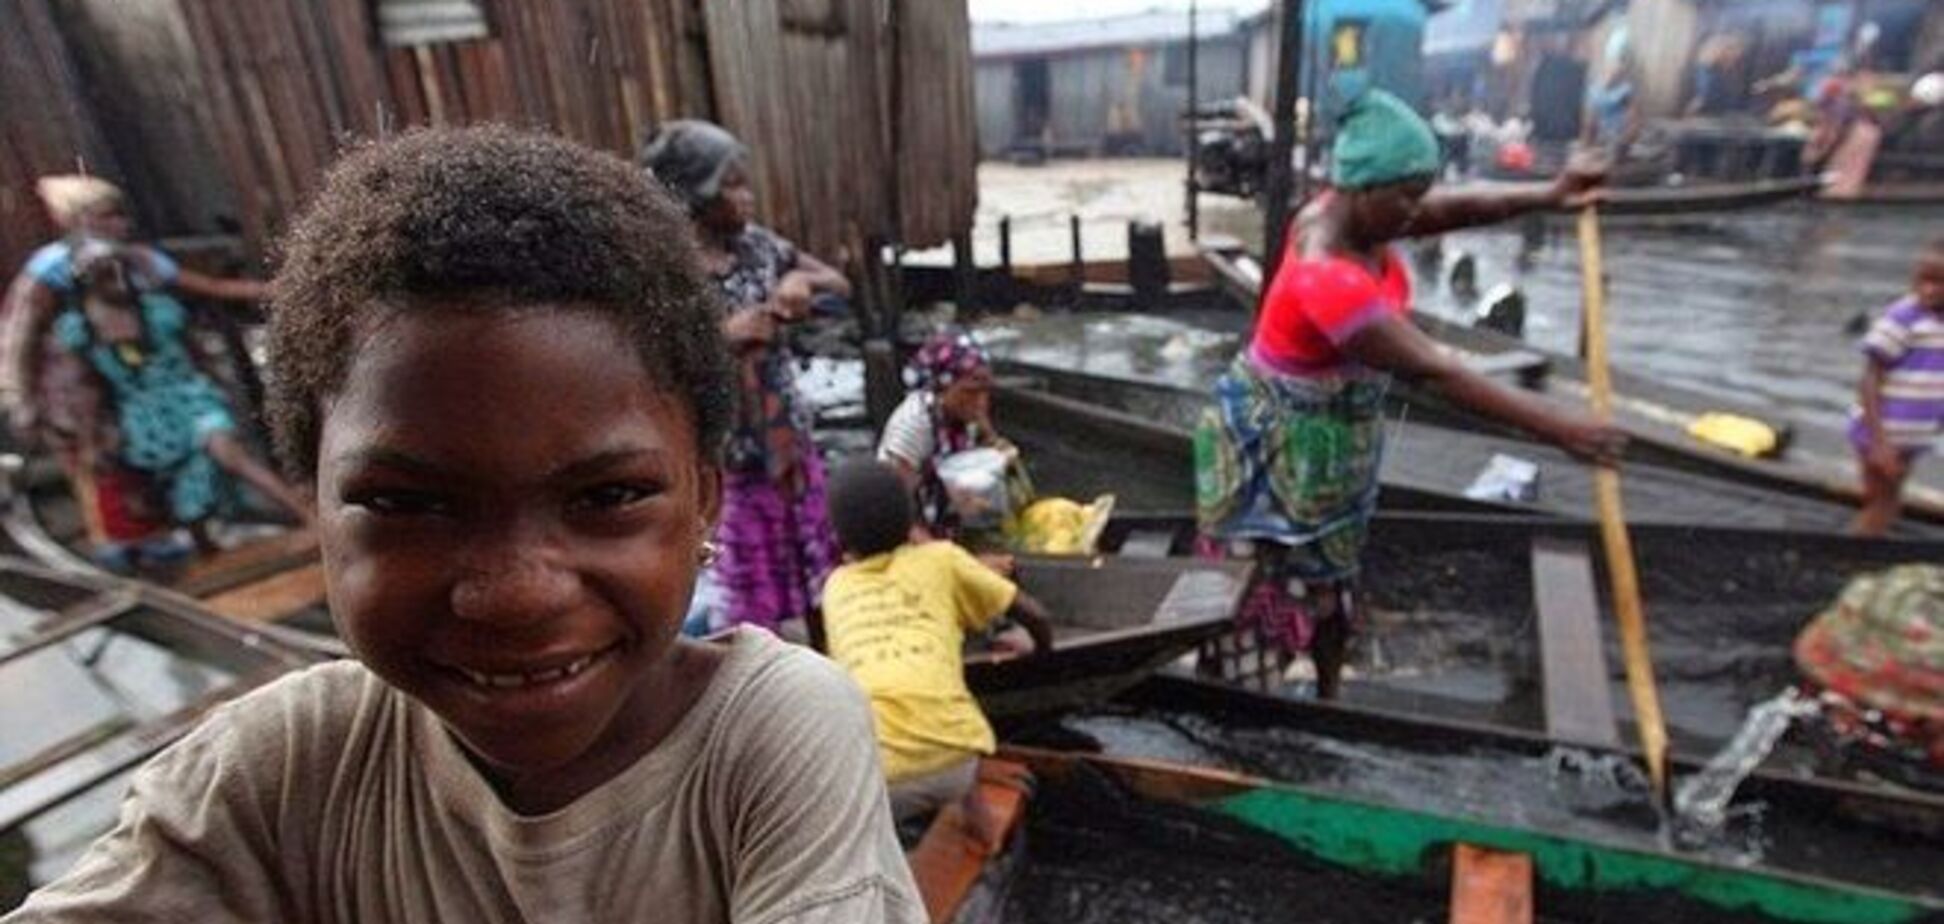 Жизнь на грани: плавающие трущобы в Нигерии